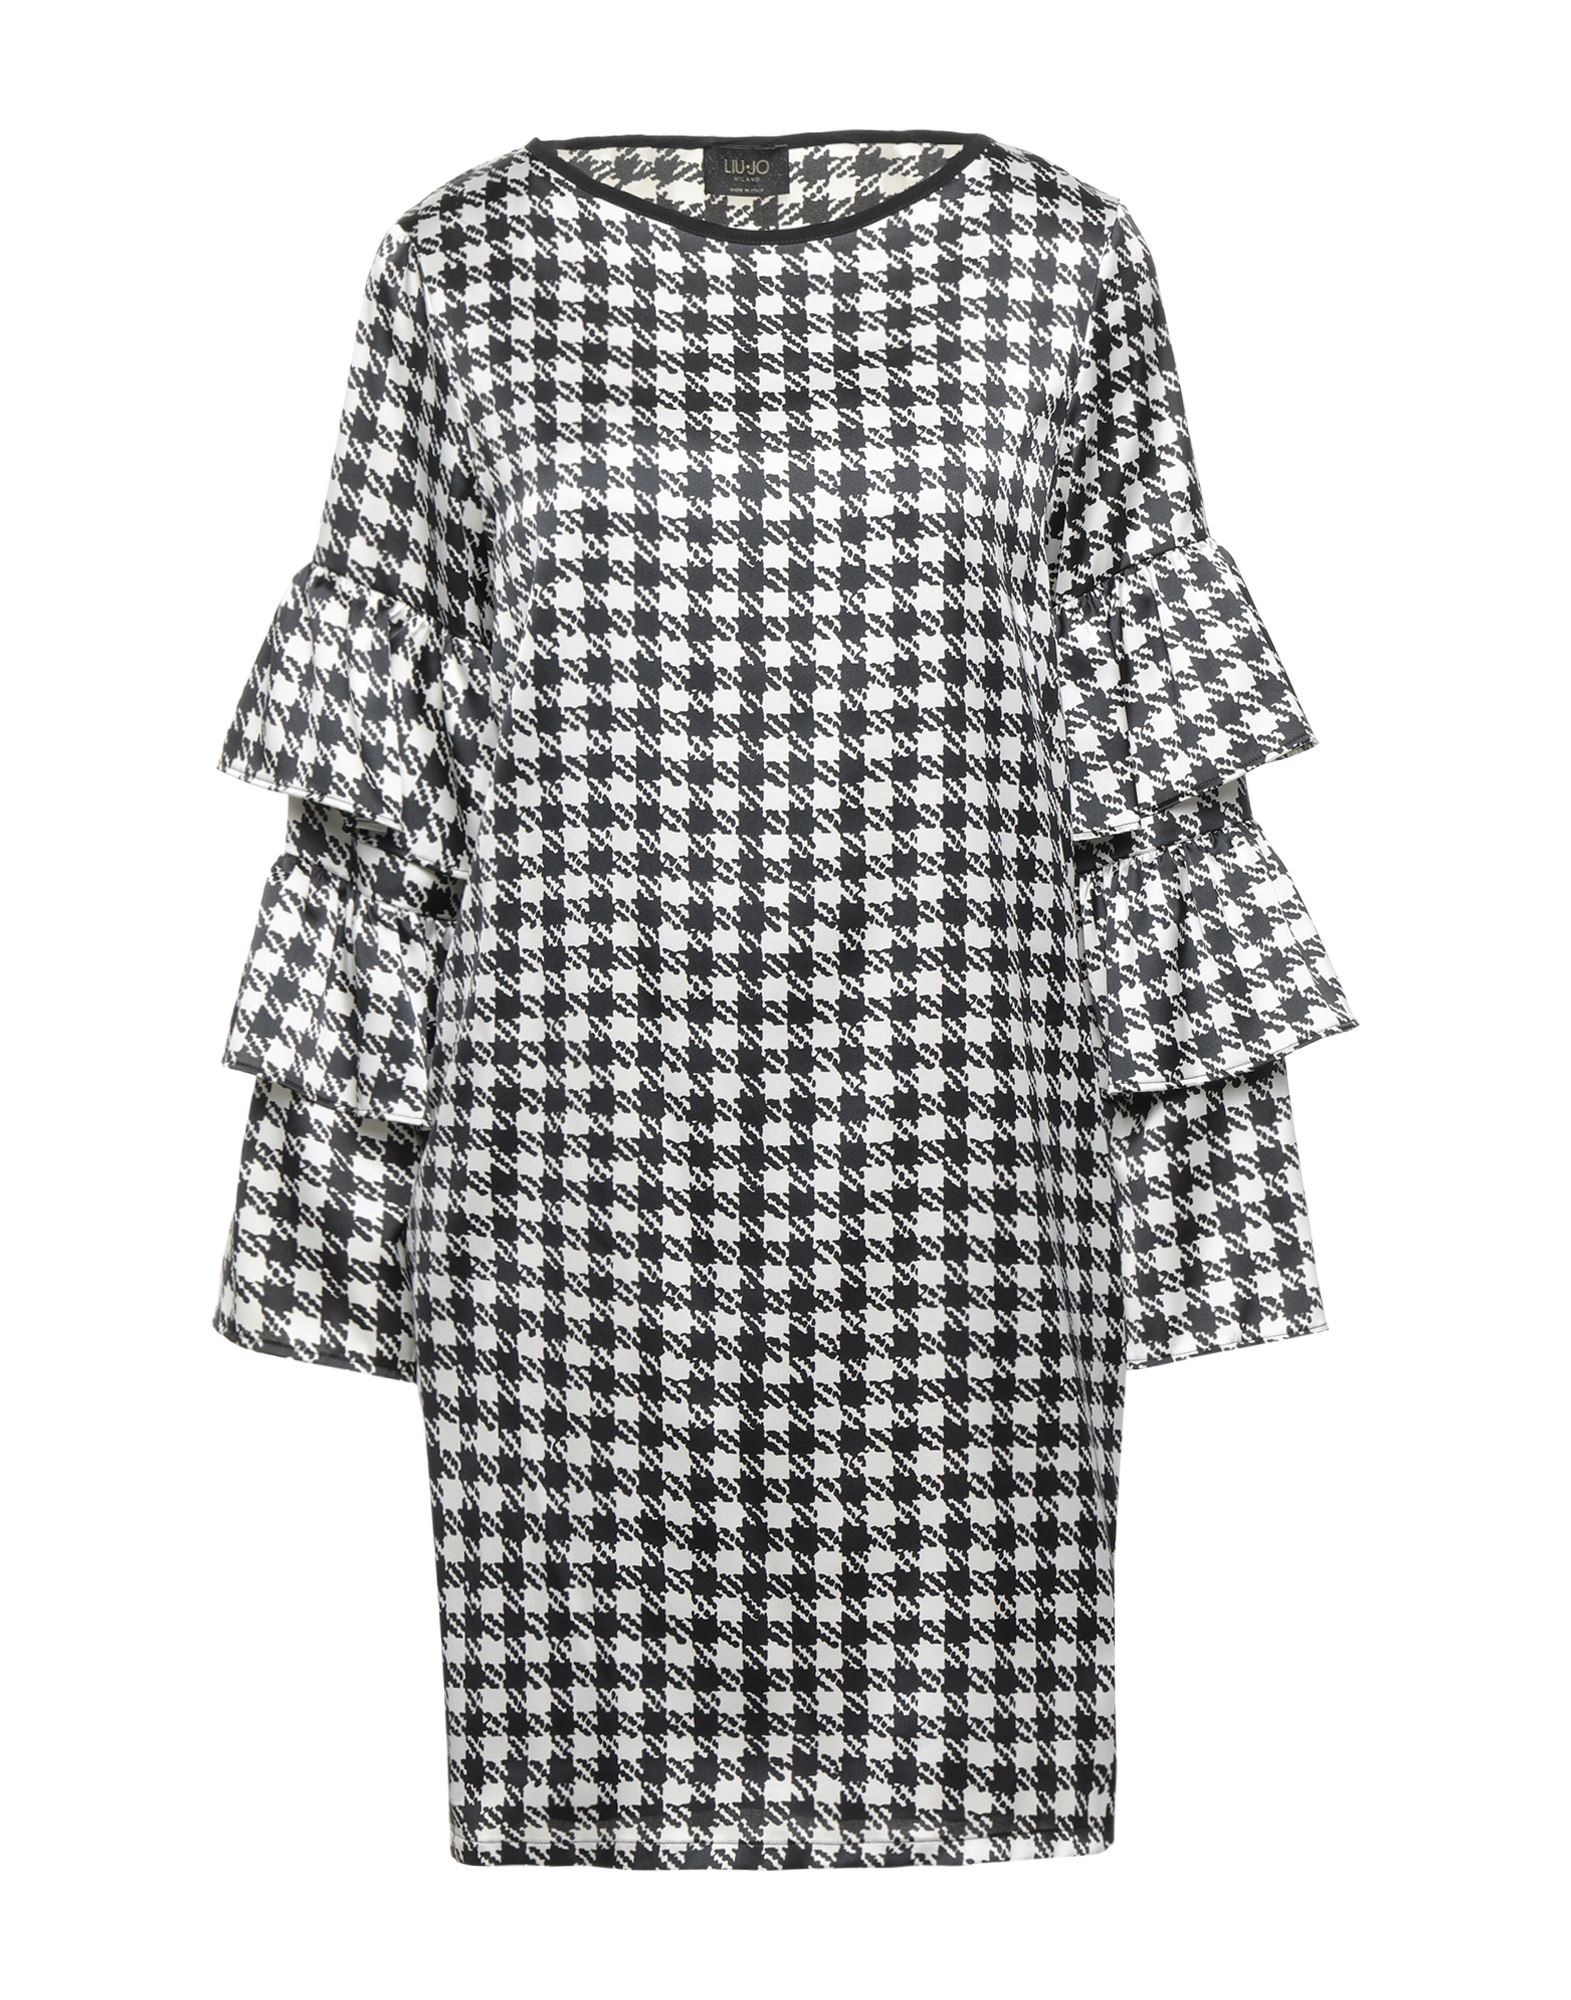 Shop Liu •jo Woman Mini Dress White Size 6 Polyester, Elastane